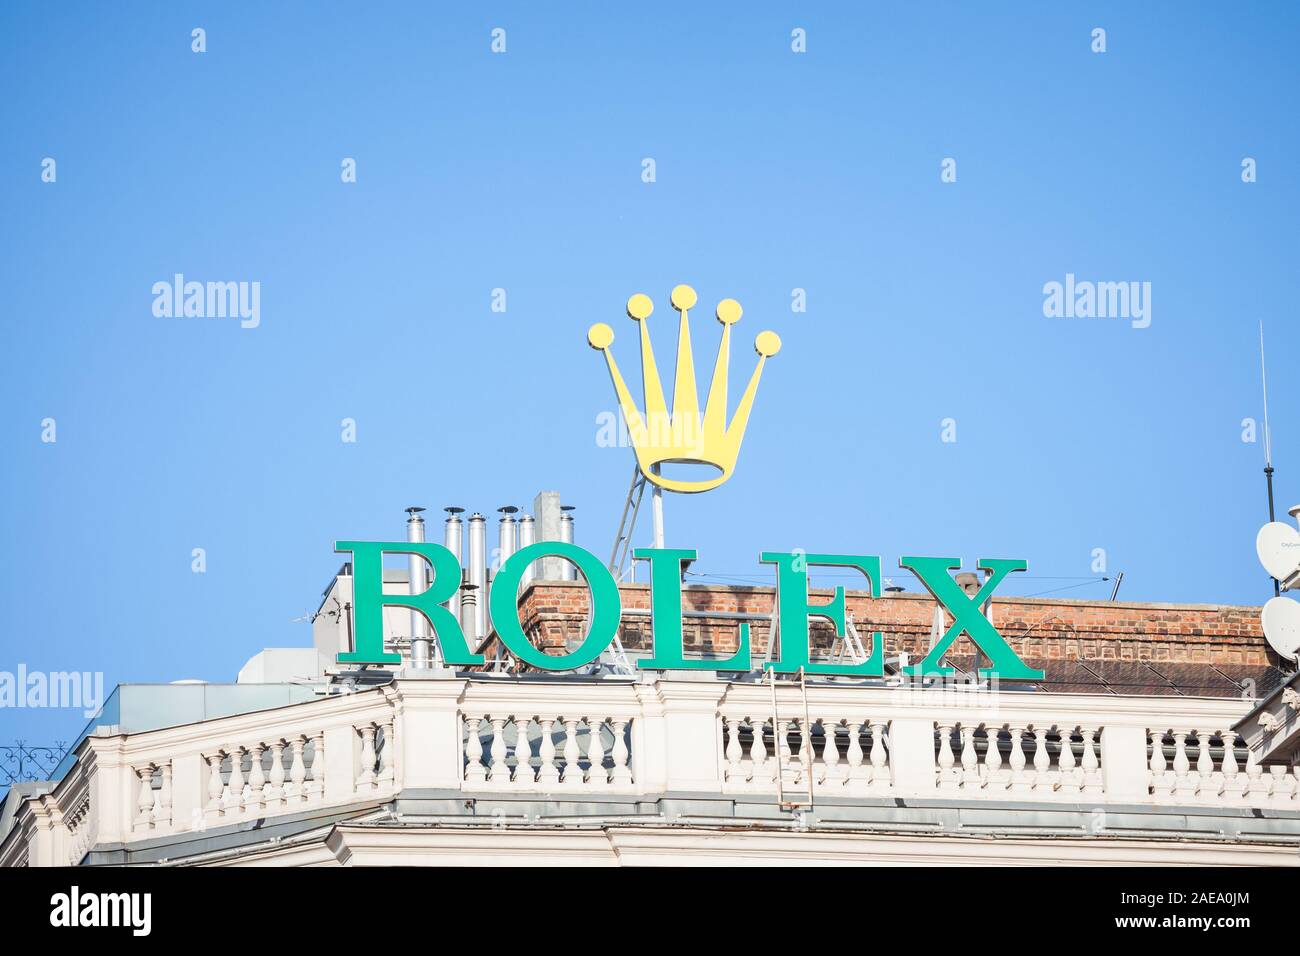 Anstændig respekt Joke Rolex signage hi-res stock photography and images - Alamy